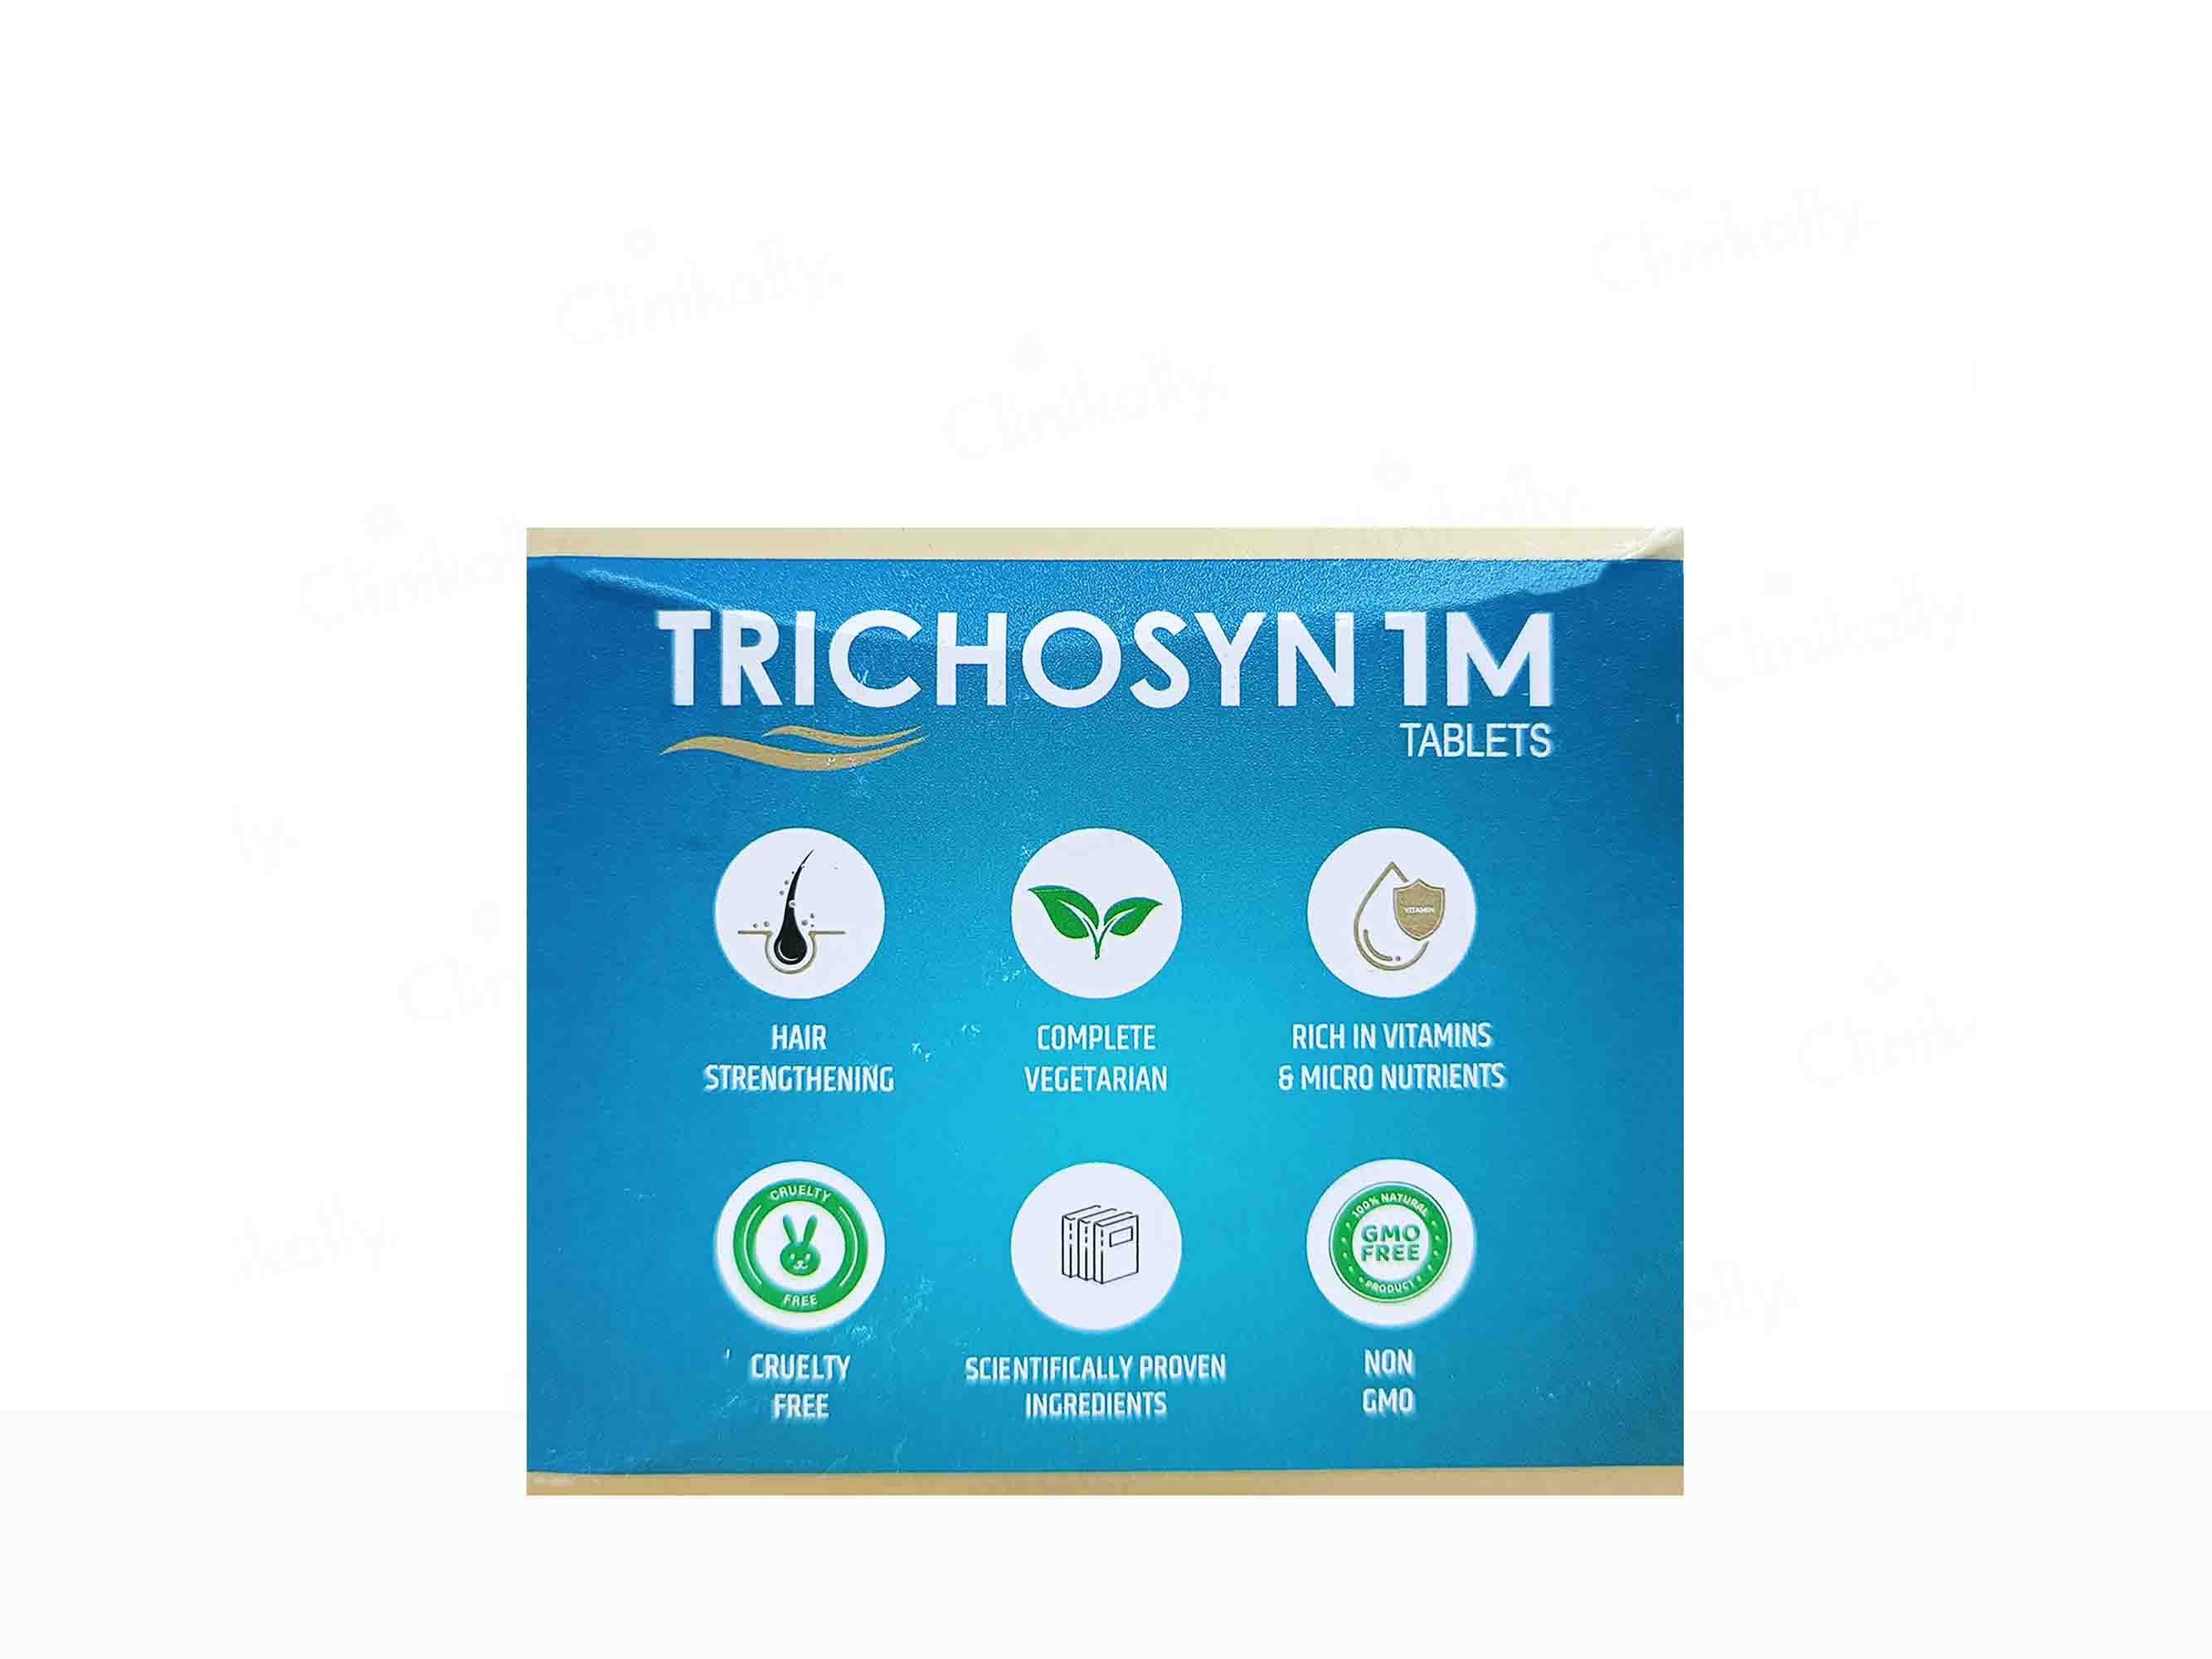 Nourrir Trichosyn 1M Tablet